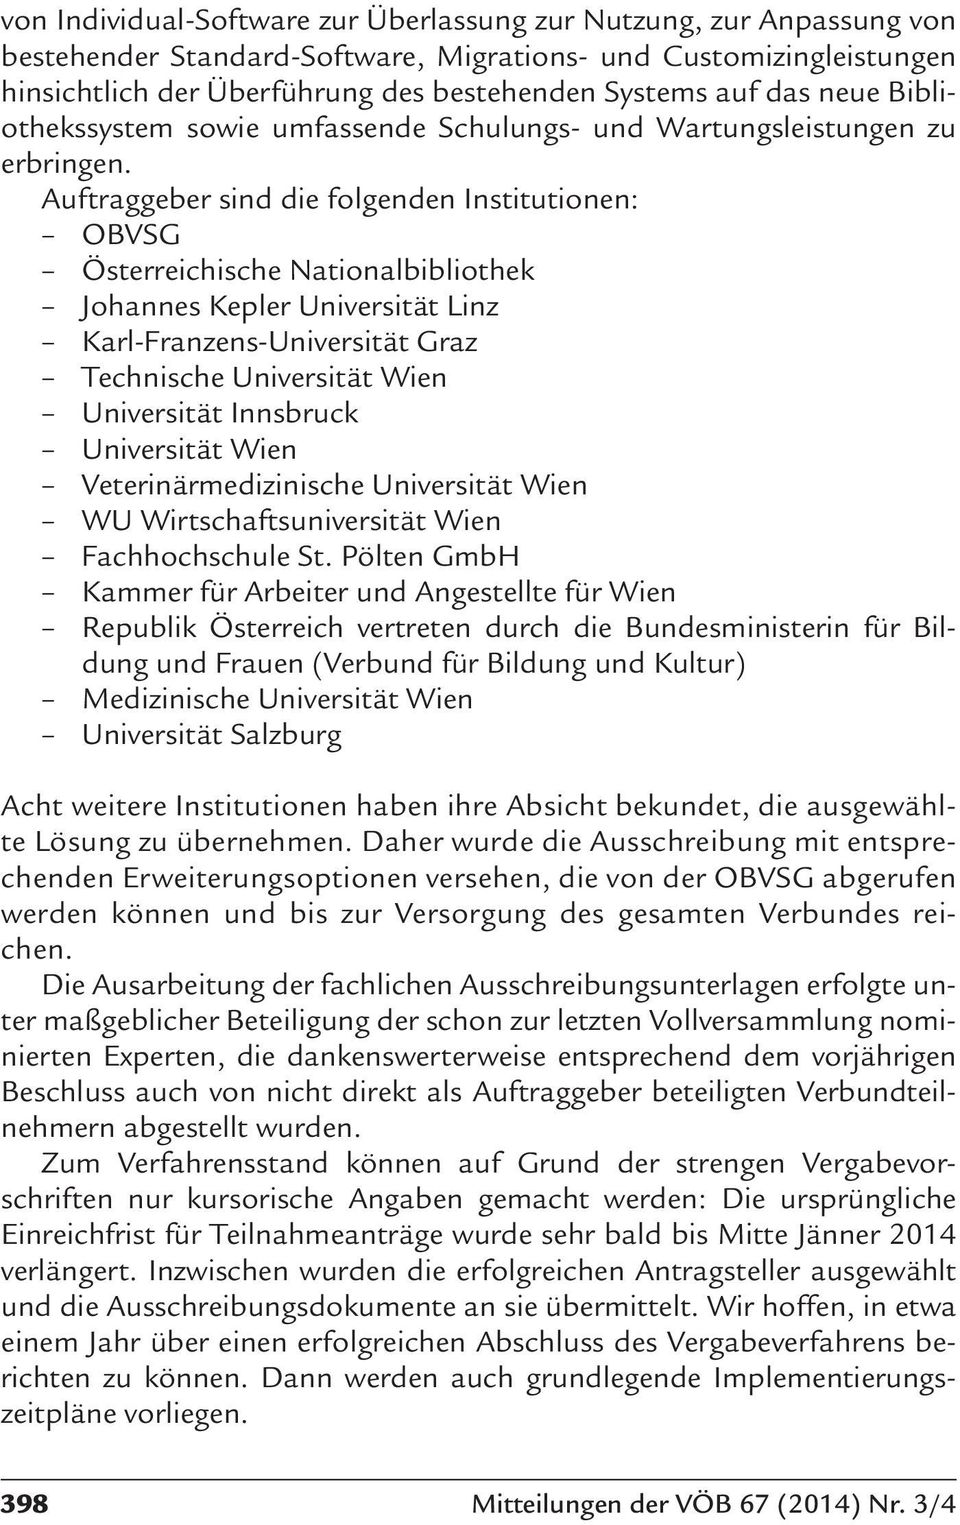 Auftraggeber sind die folgenden Institutionen: OBVSG Österreichische Nationalbibliothek Johannes Kepler Universität Linz Karl-Franzens-Universität Graz Technische Universität Wien Universität